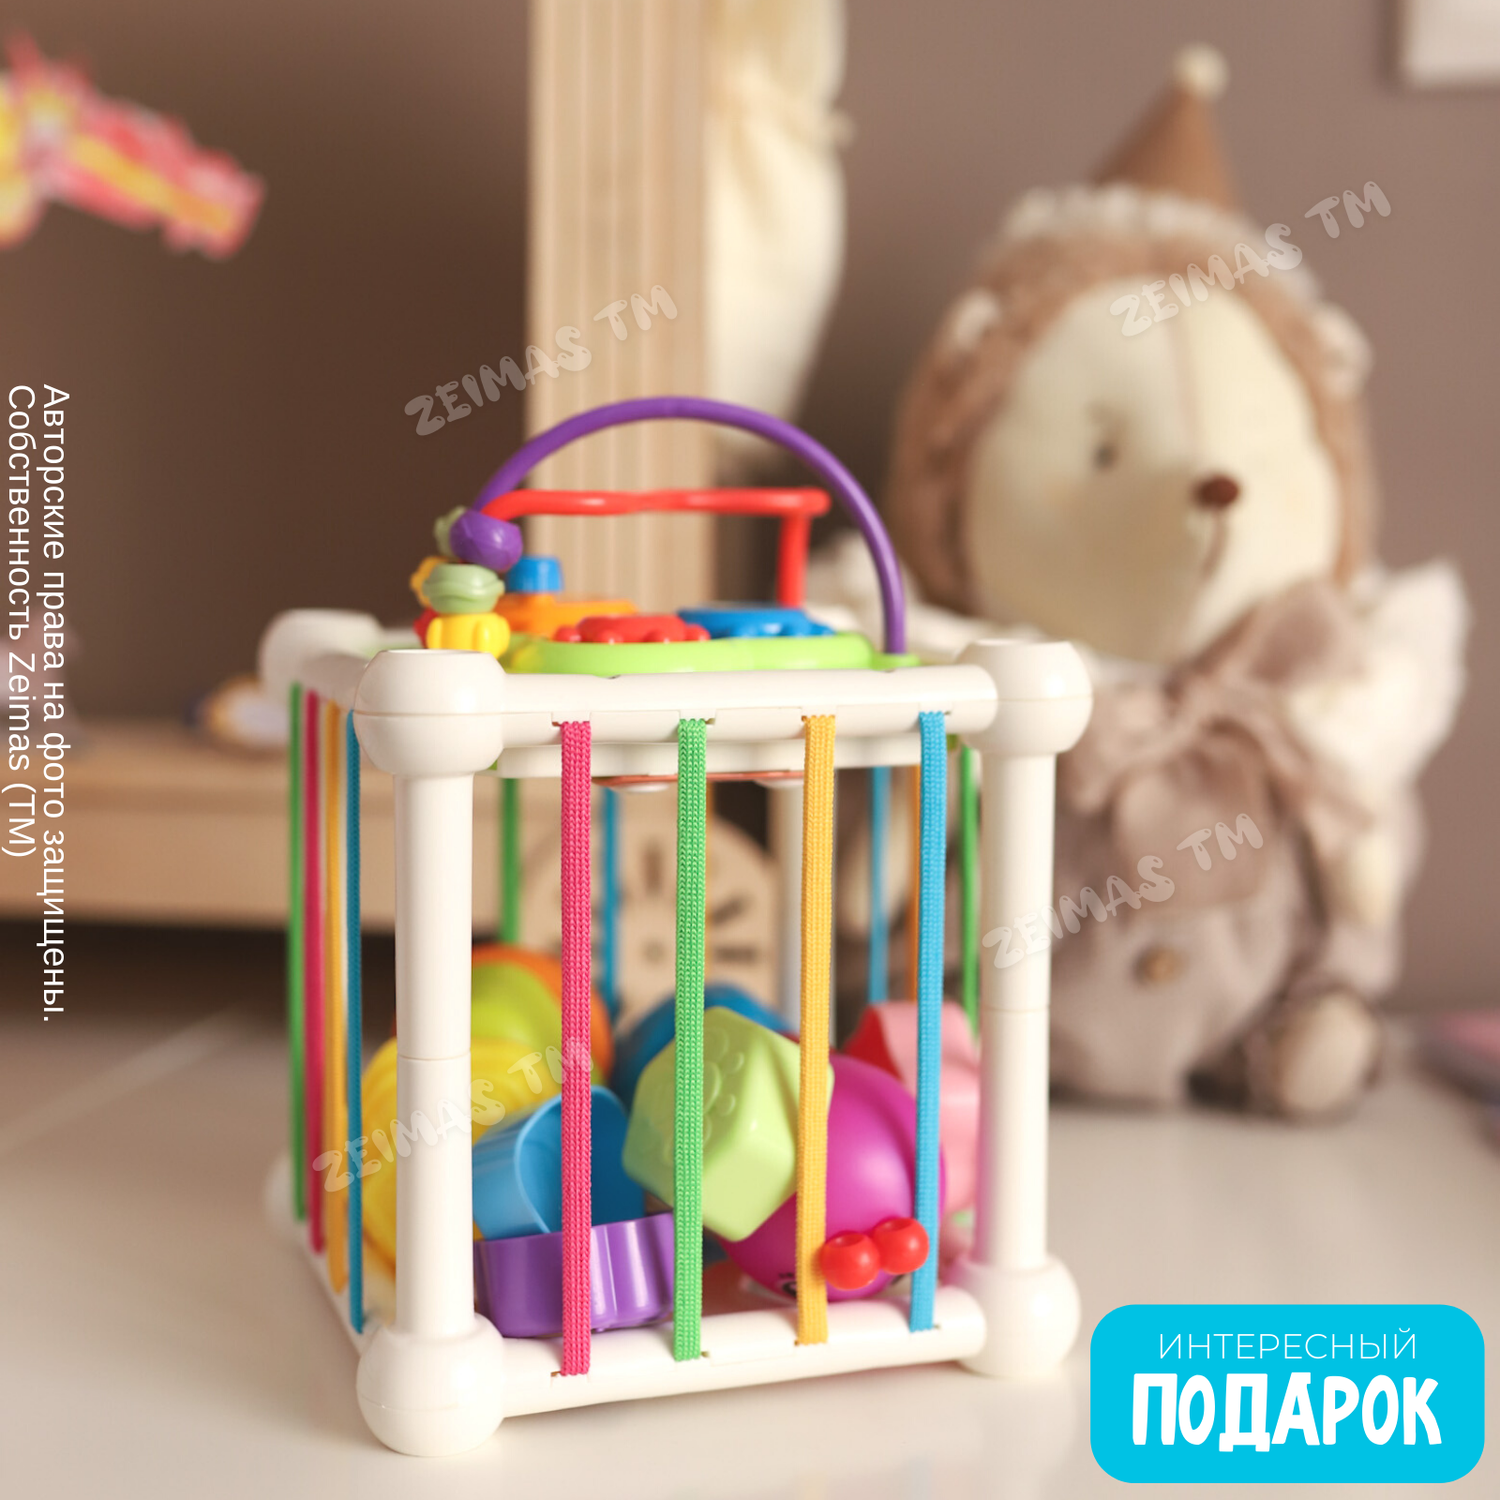 Сортер-куб Zeimas Монтессори 6 фигурок с погремушкой развивающая игрушка ксилофон - фото 12